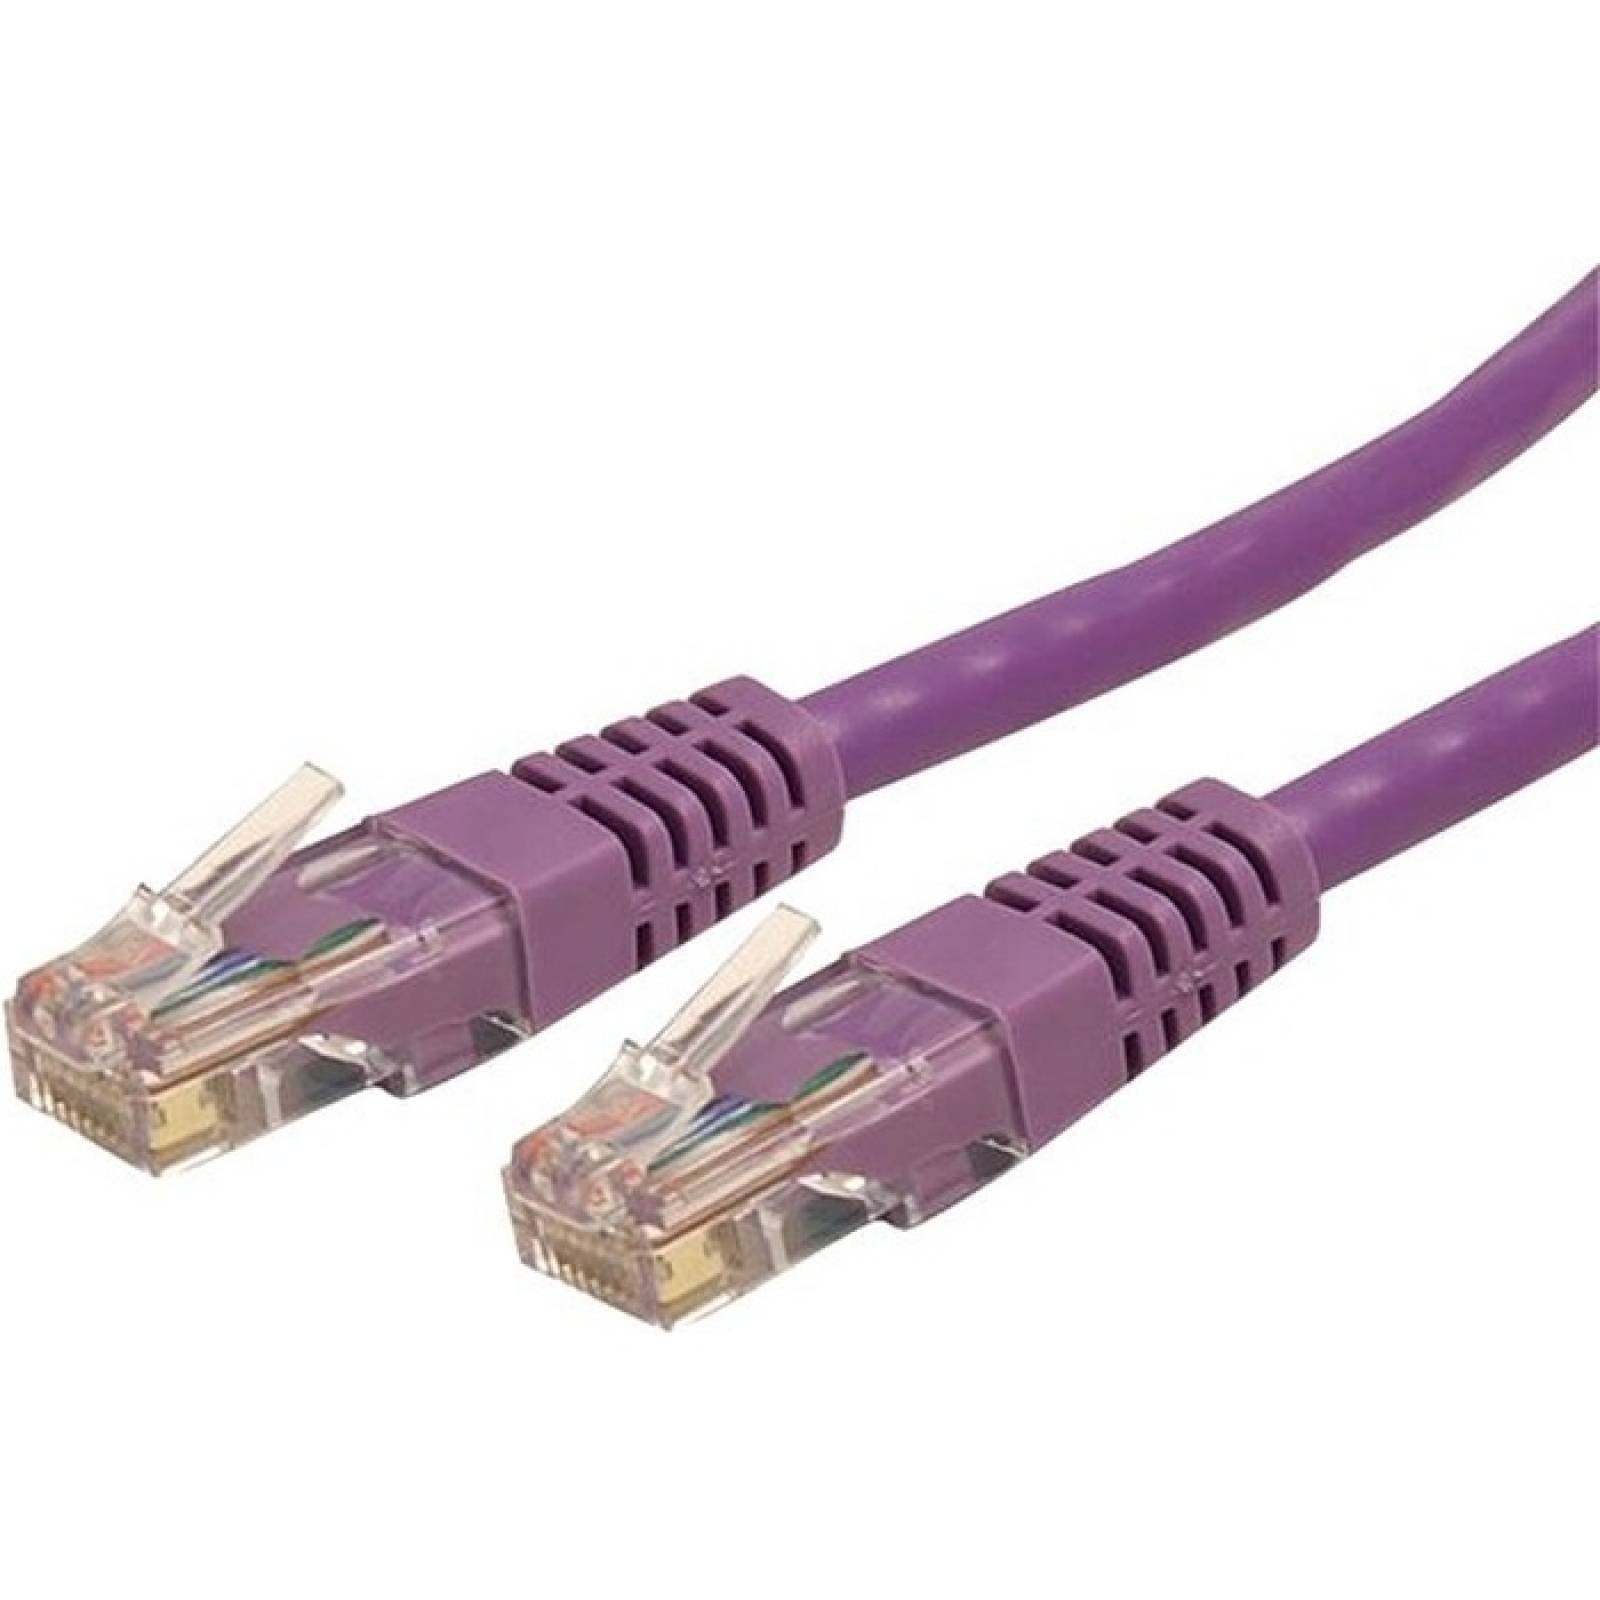 StarTechcom Cable de conexin Cat 6 Gigabit UTP RJ45 moldeado en color prpura de 25 pies Cat  Cable de conexin de 25